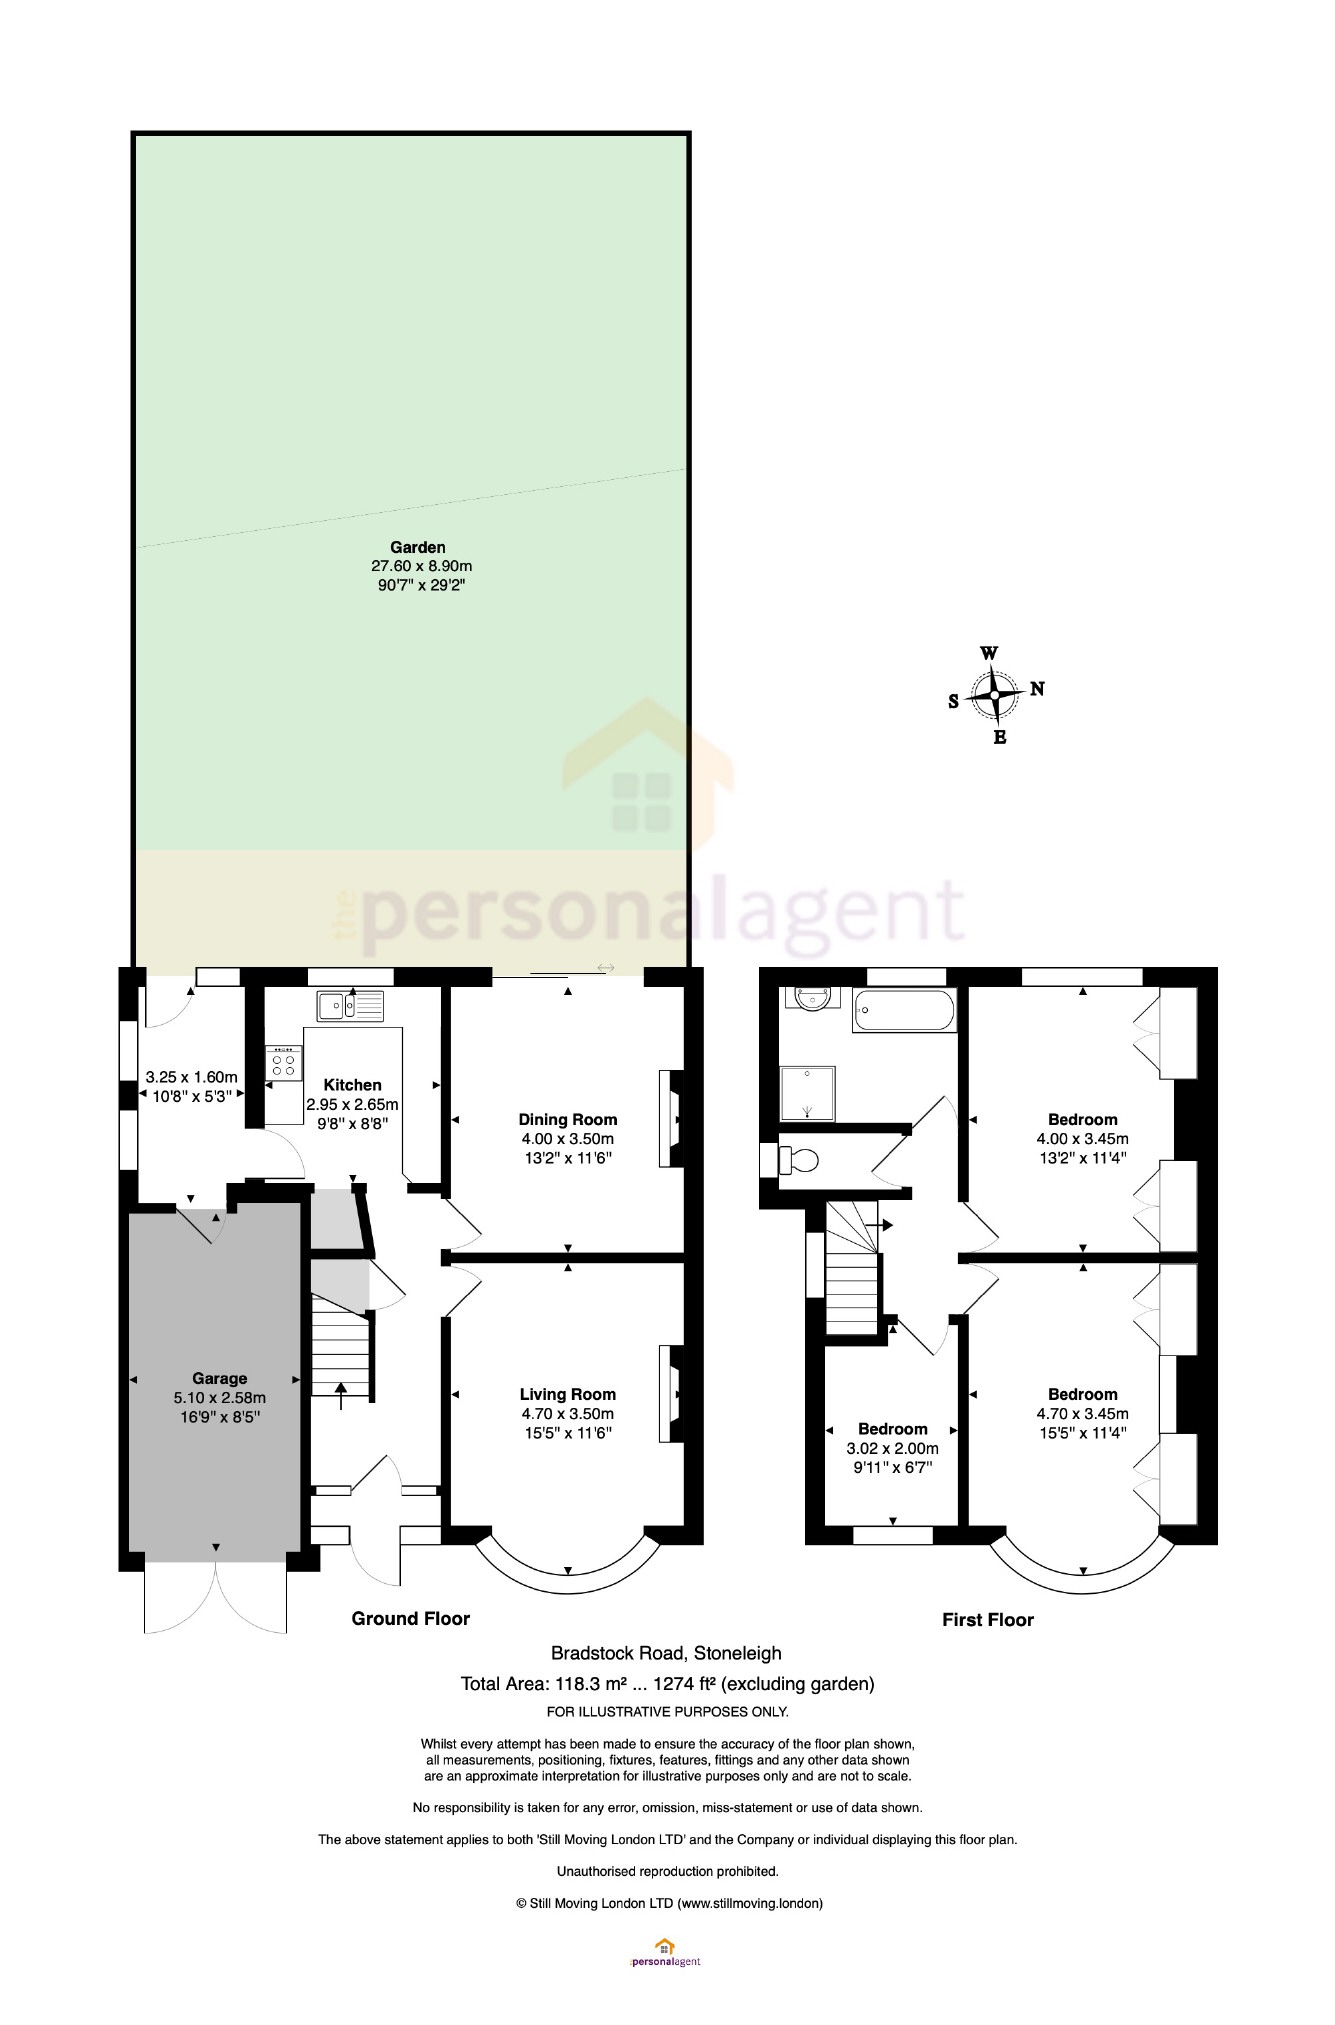 3 Bedrooms Semi-detached house for sale in Bradstock Road, Stoneleigh, Surrey KT17